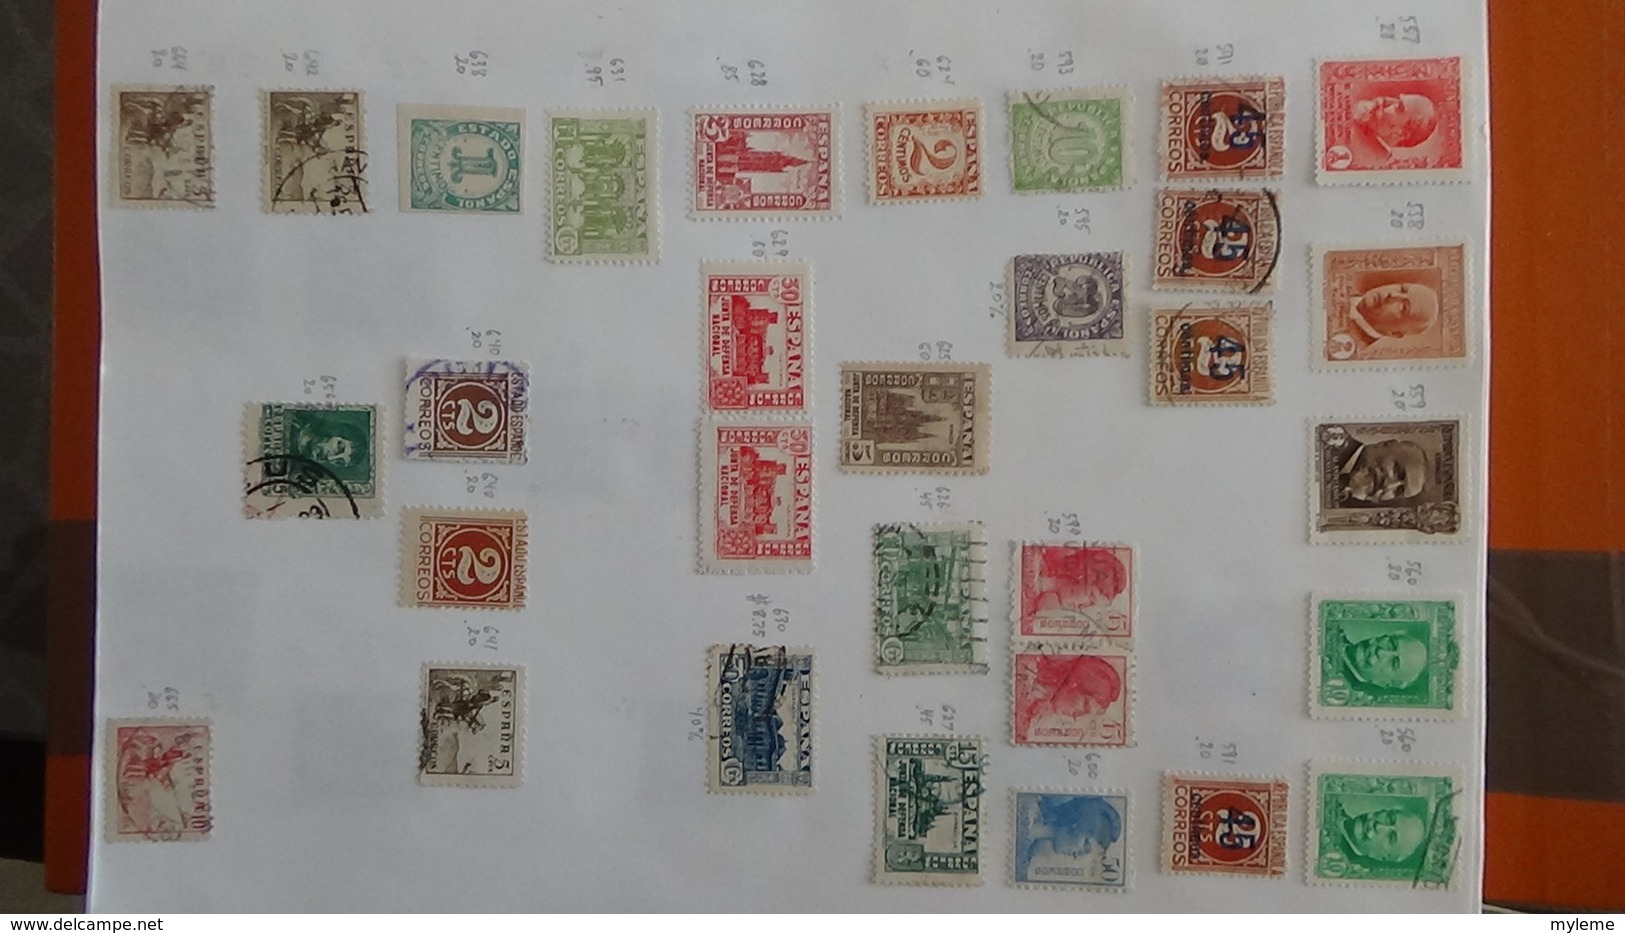 A254 Cahier de timbres d'Espagne  !!! Voir commentaires